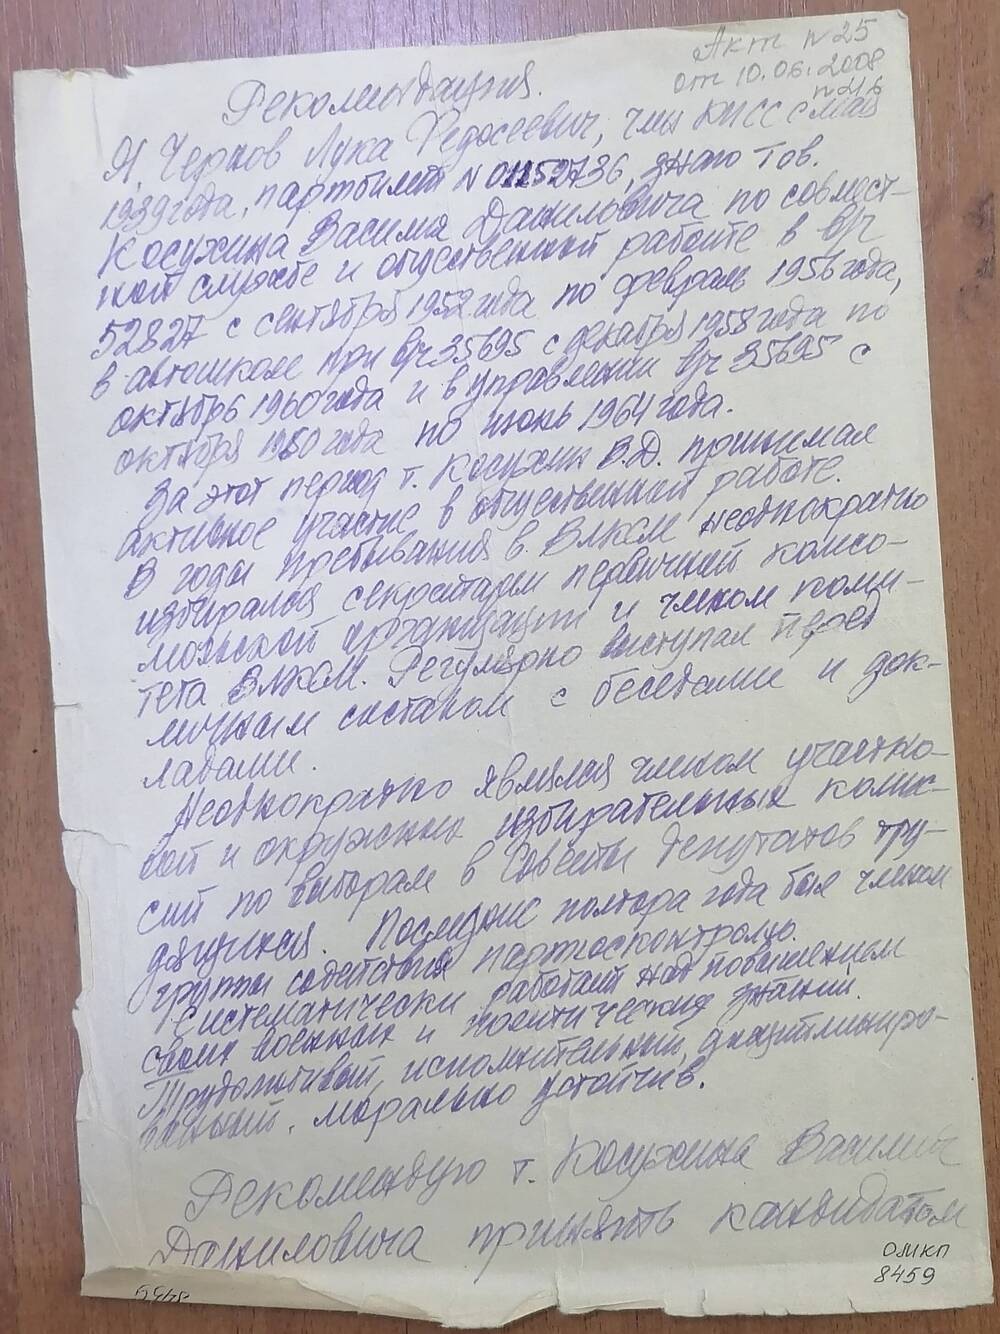 Рекомендация на Косухина Василия Даниловича кандидатом в члены КПСС